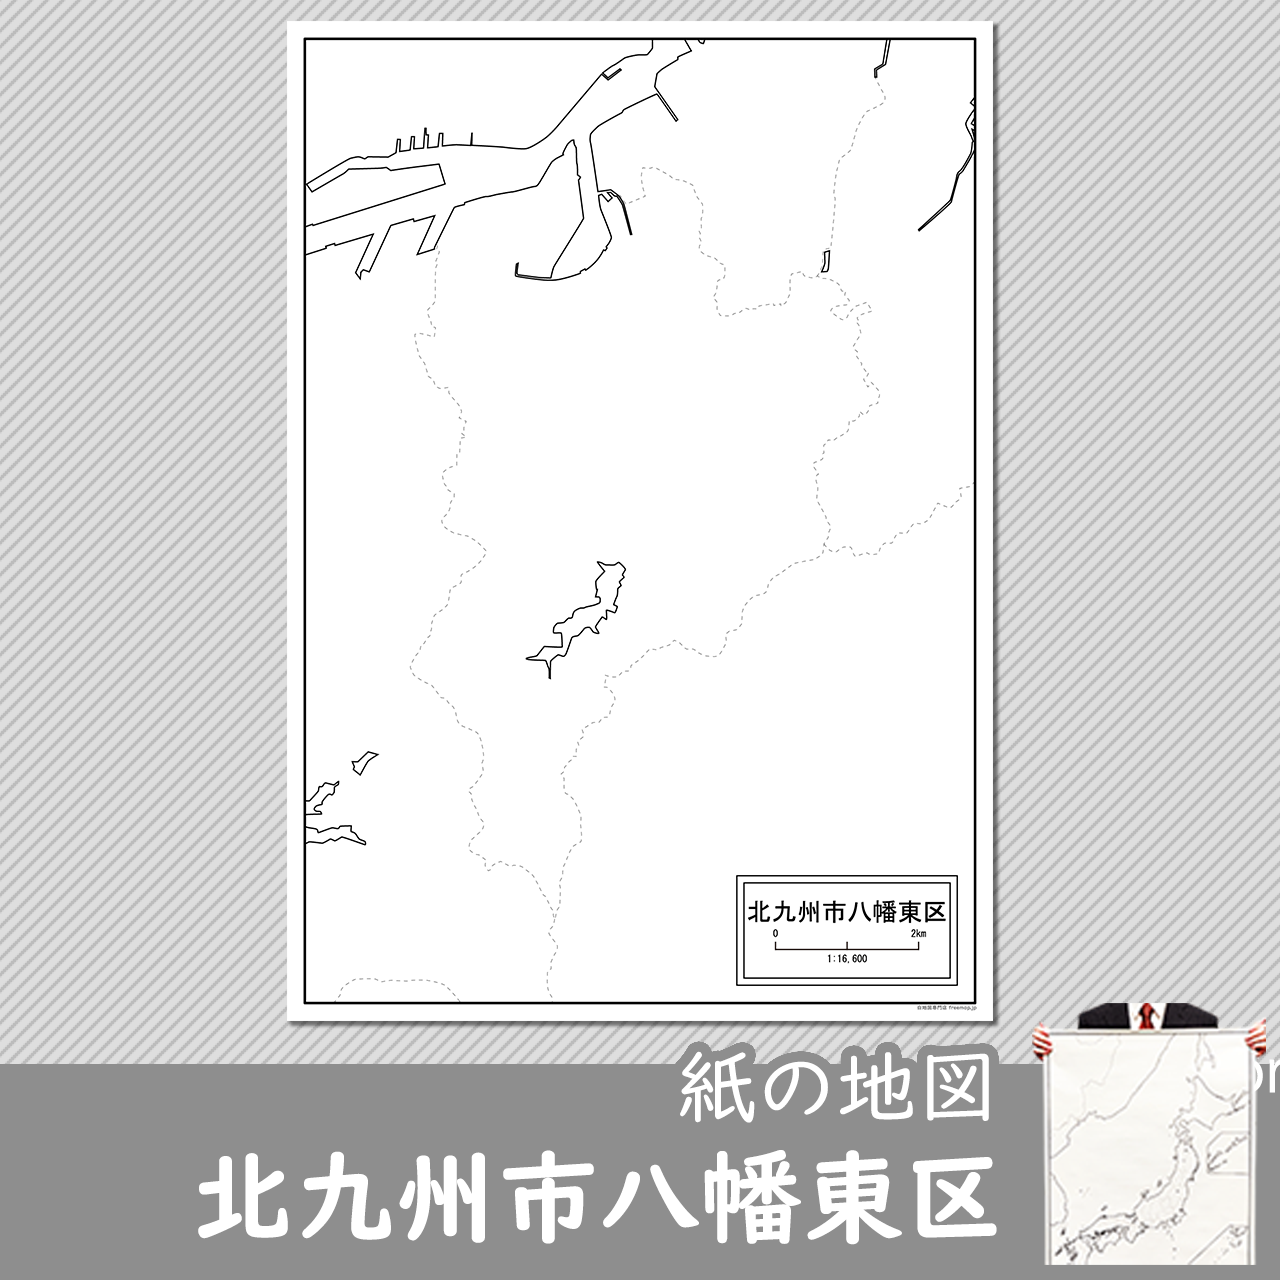 北九州市八幡東区の紙の白地図のサムネイル